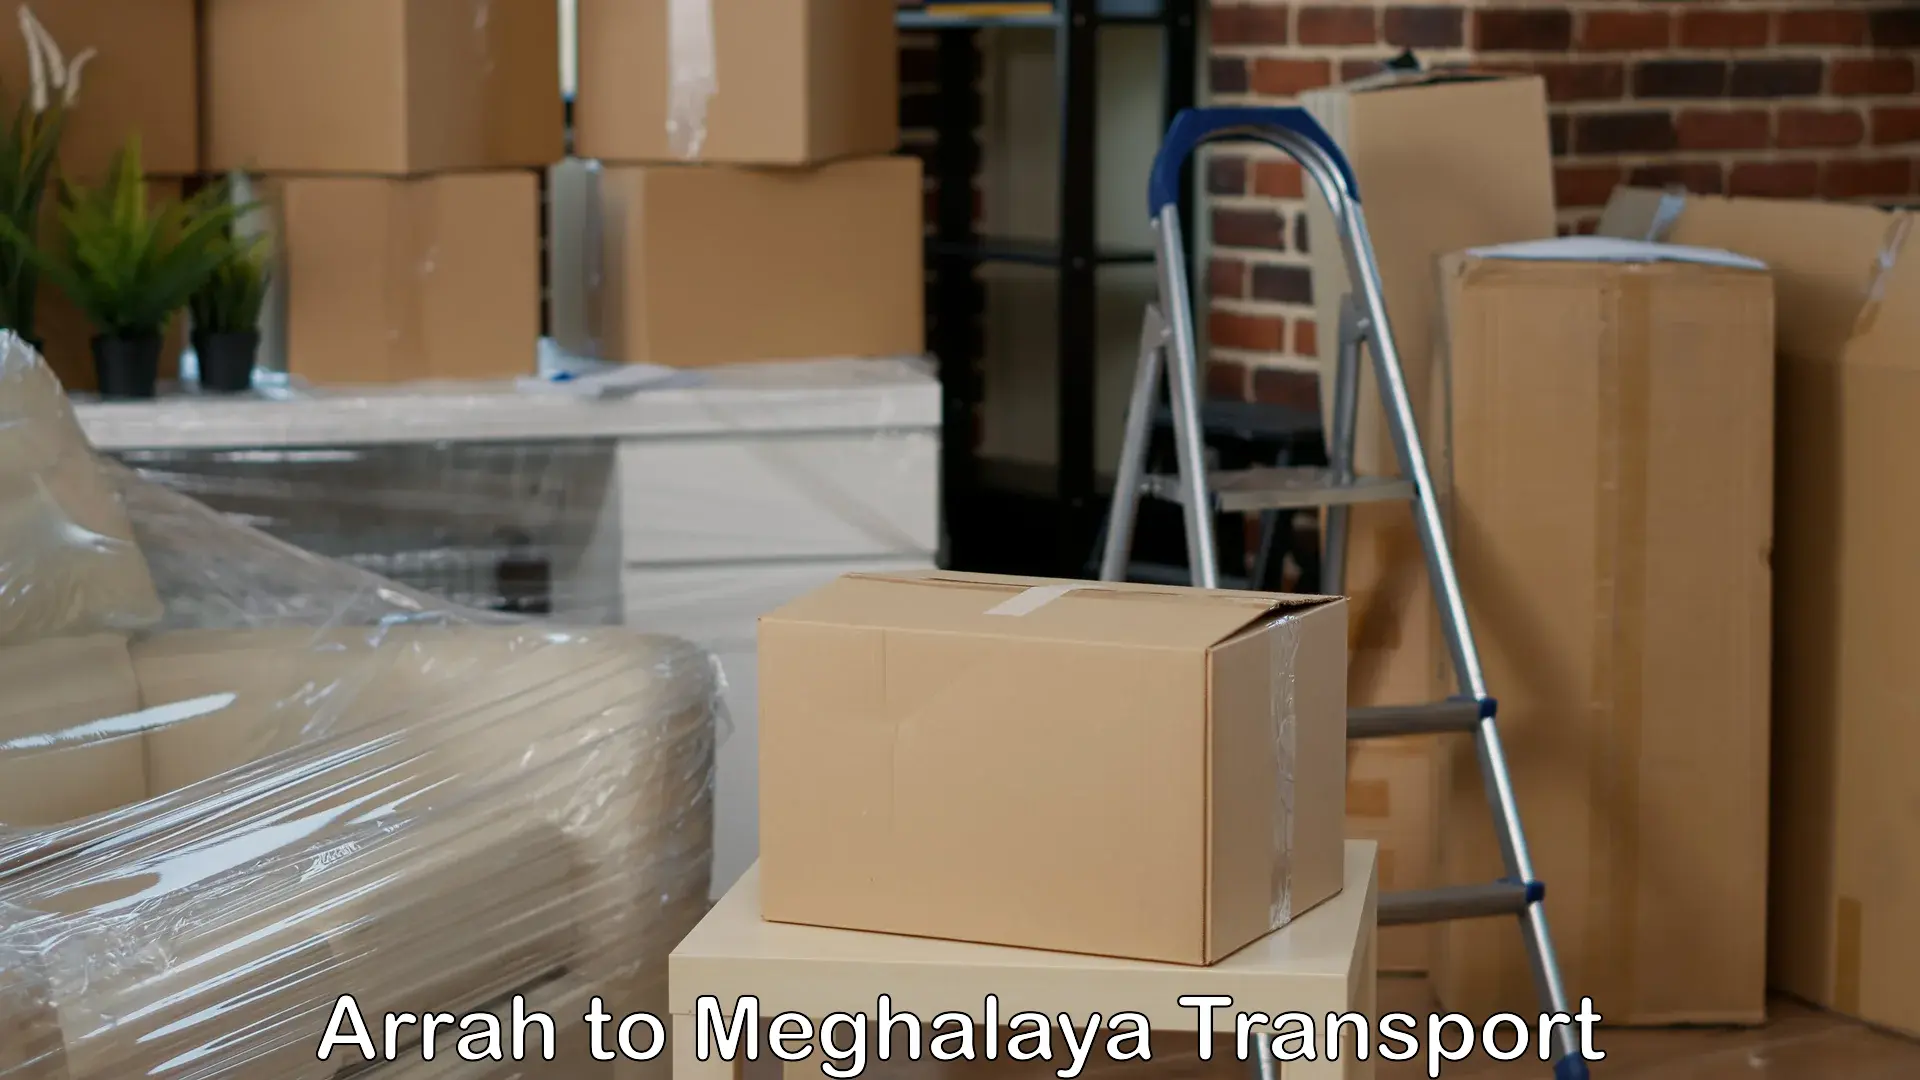 Transport in sharing Arrah to NIT Meghalaya